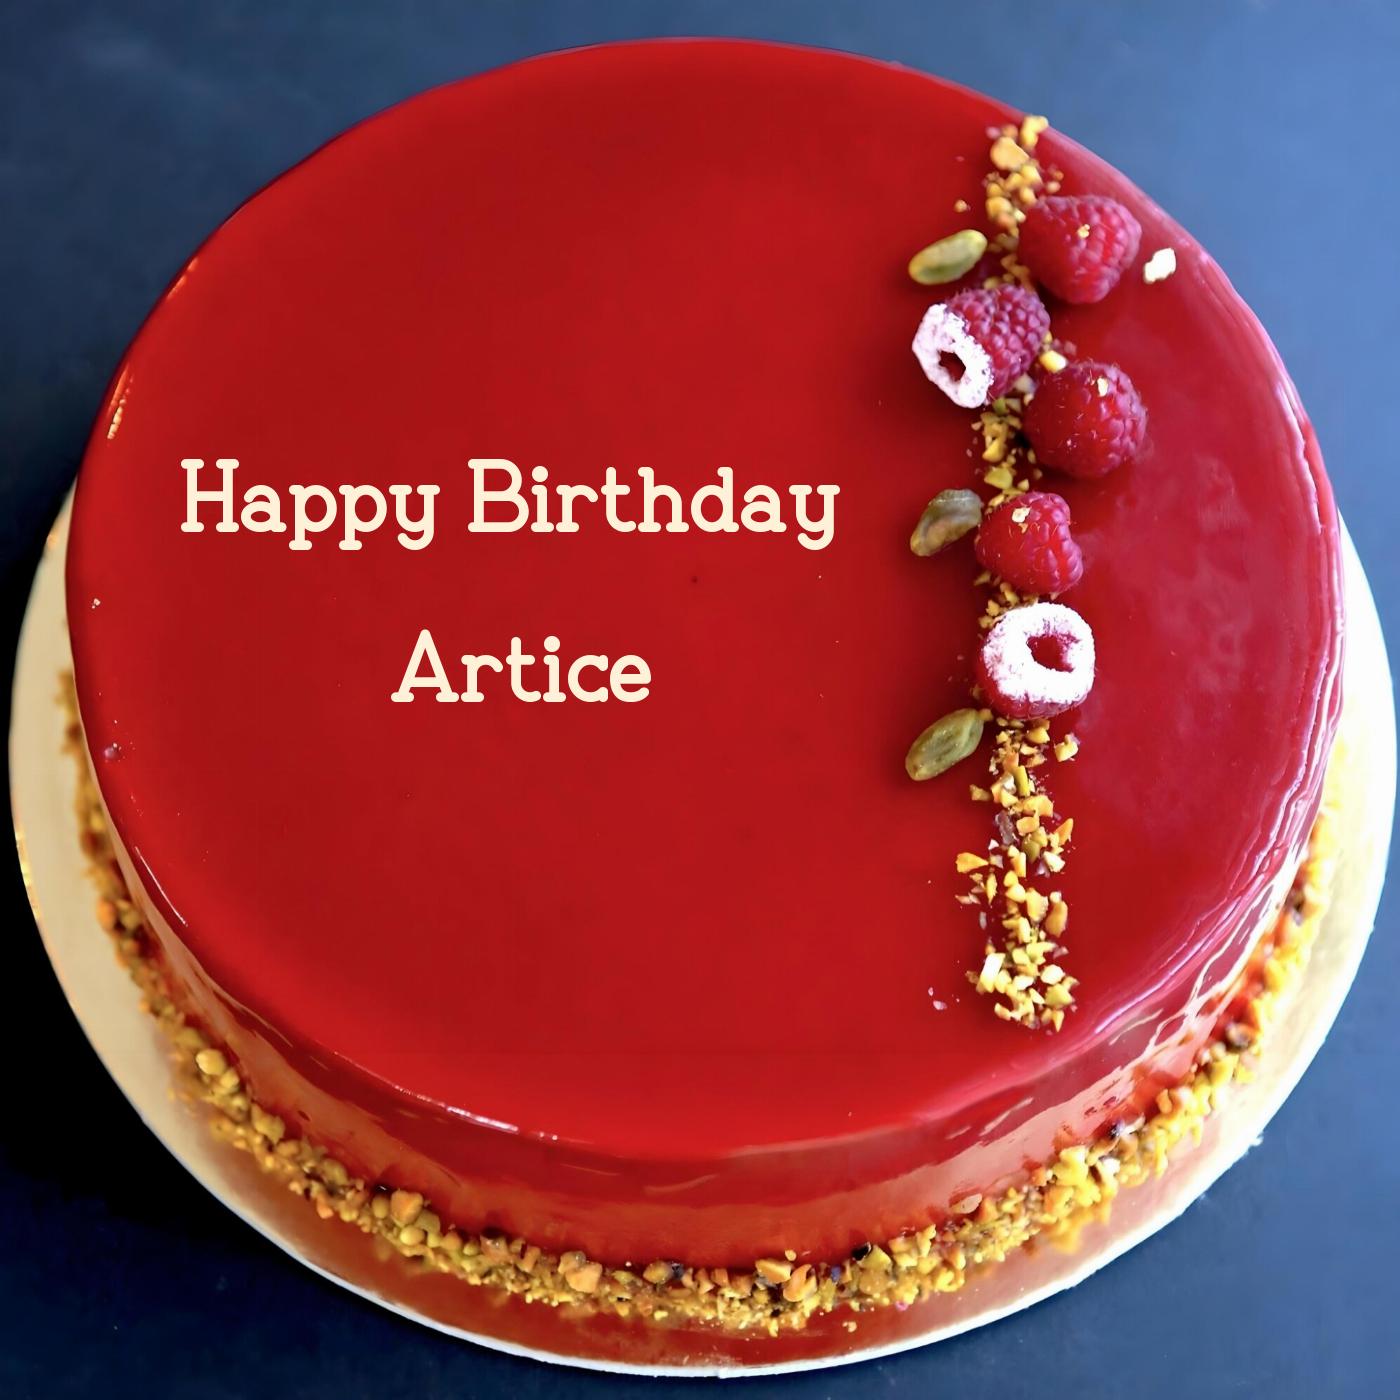 Happy Birthday Artice Red Raspberry Cake